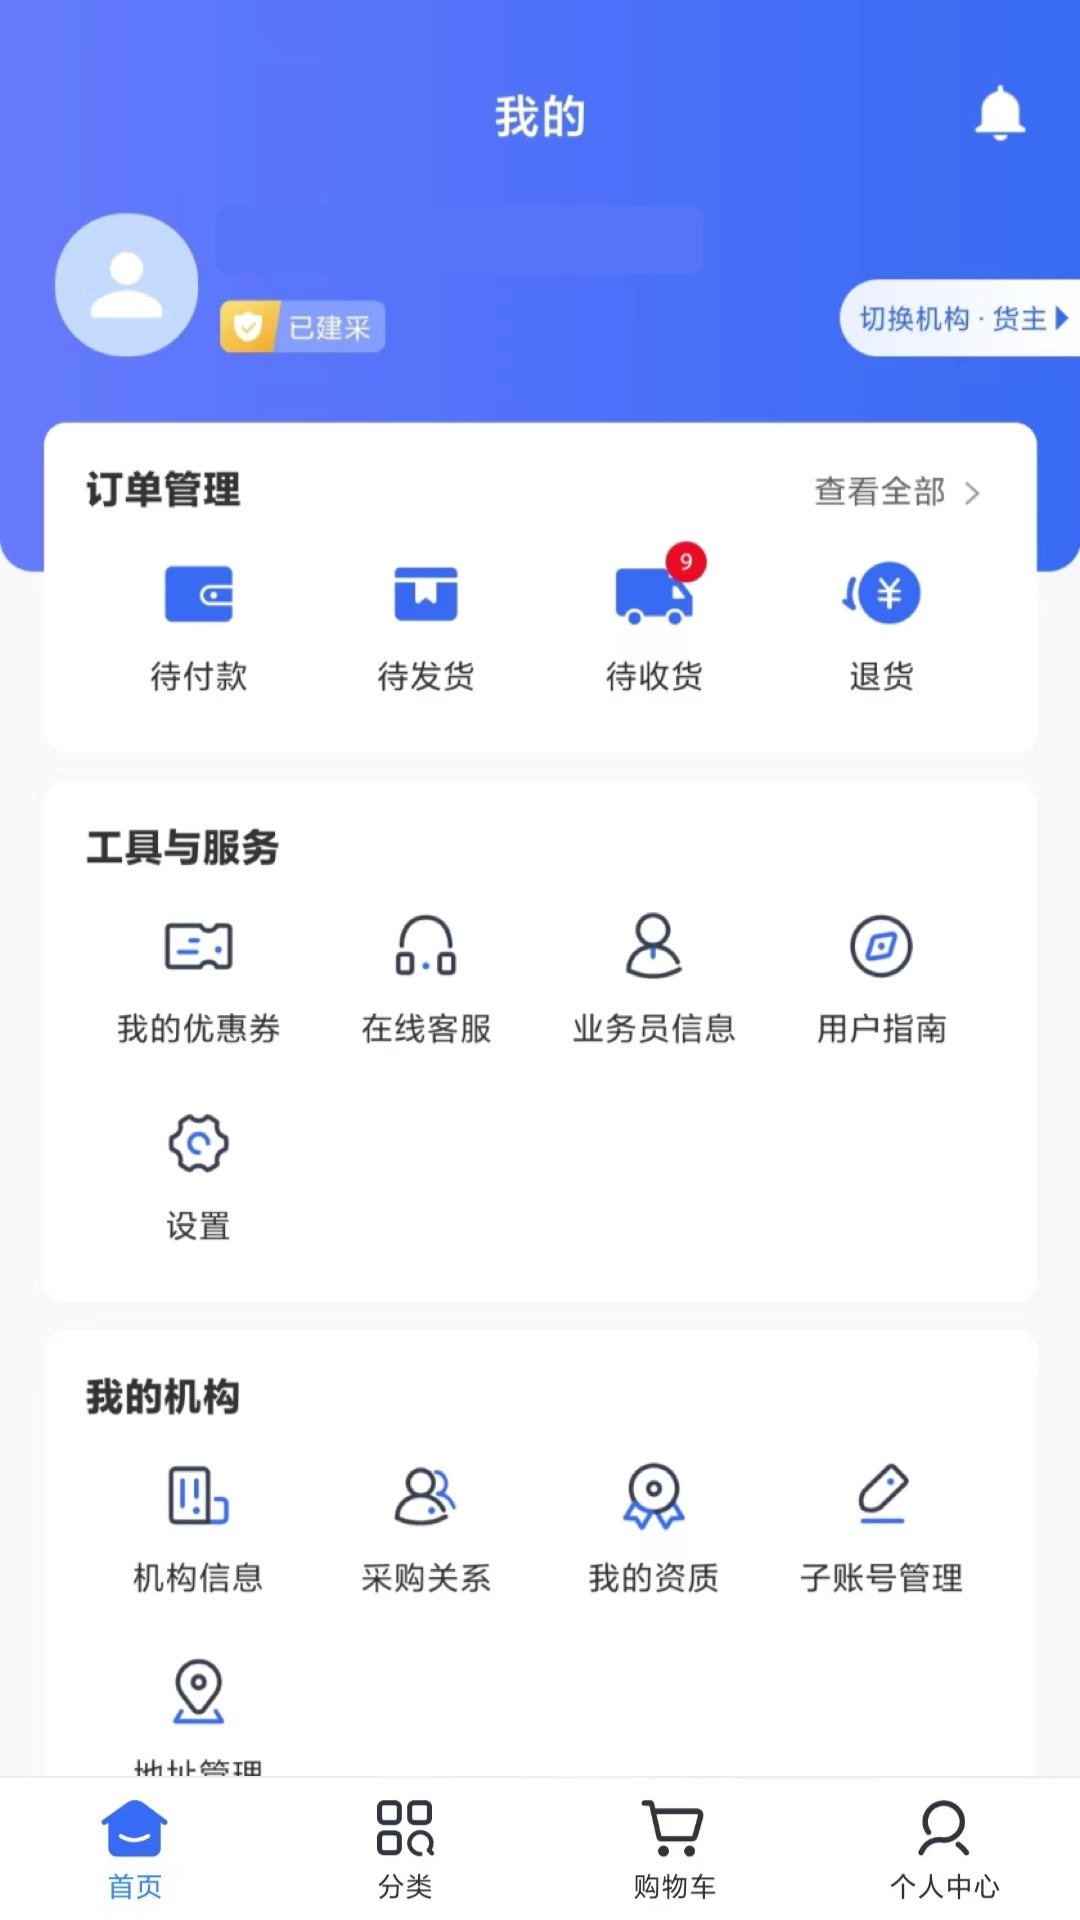 健之桥医药网app下载,健之桥医药网app官方下载 v1.2.5